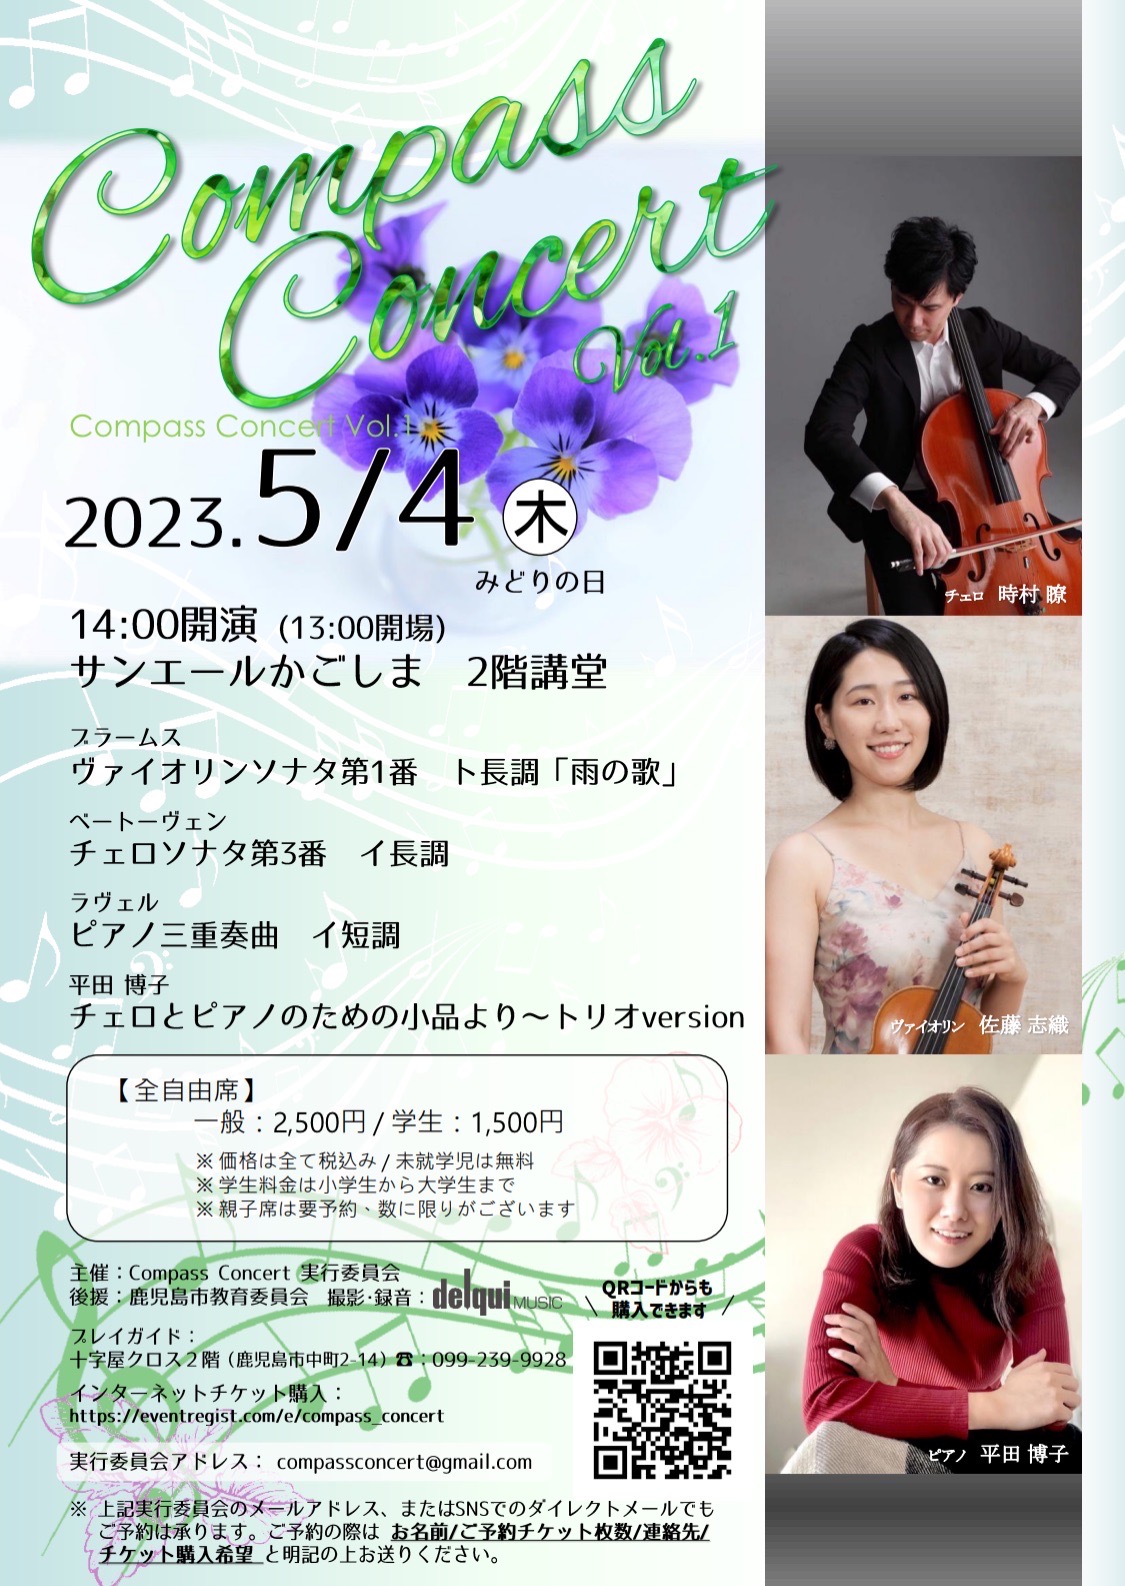 Compass Concert Vol.1